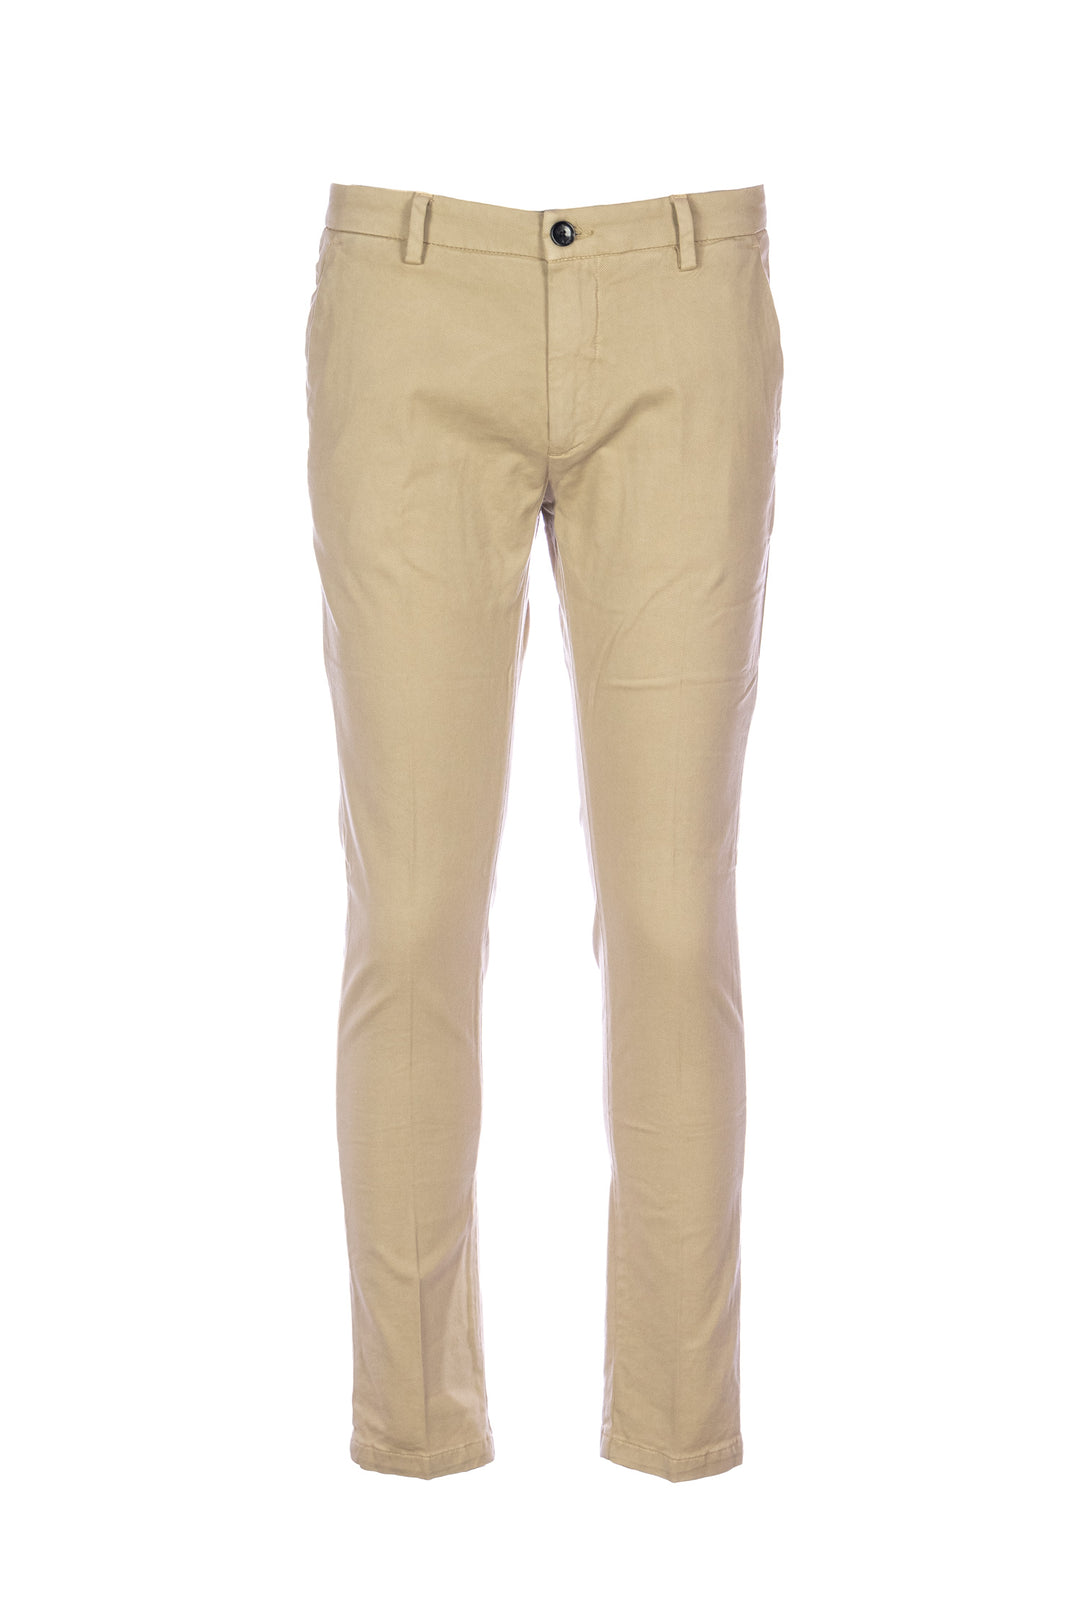 YAN SIMMON Pantalone beige in gabardina di cotone elasticizzato - Mancinelli 1954